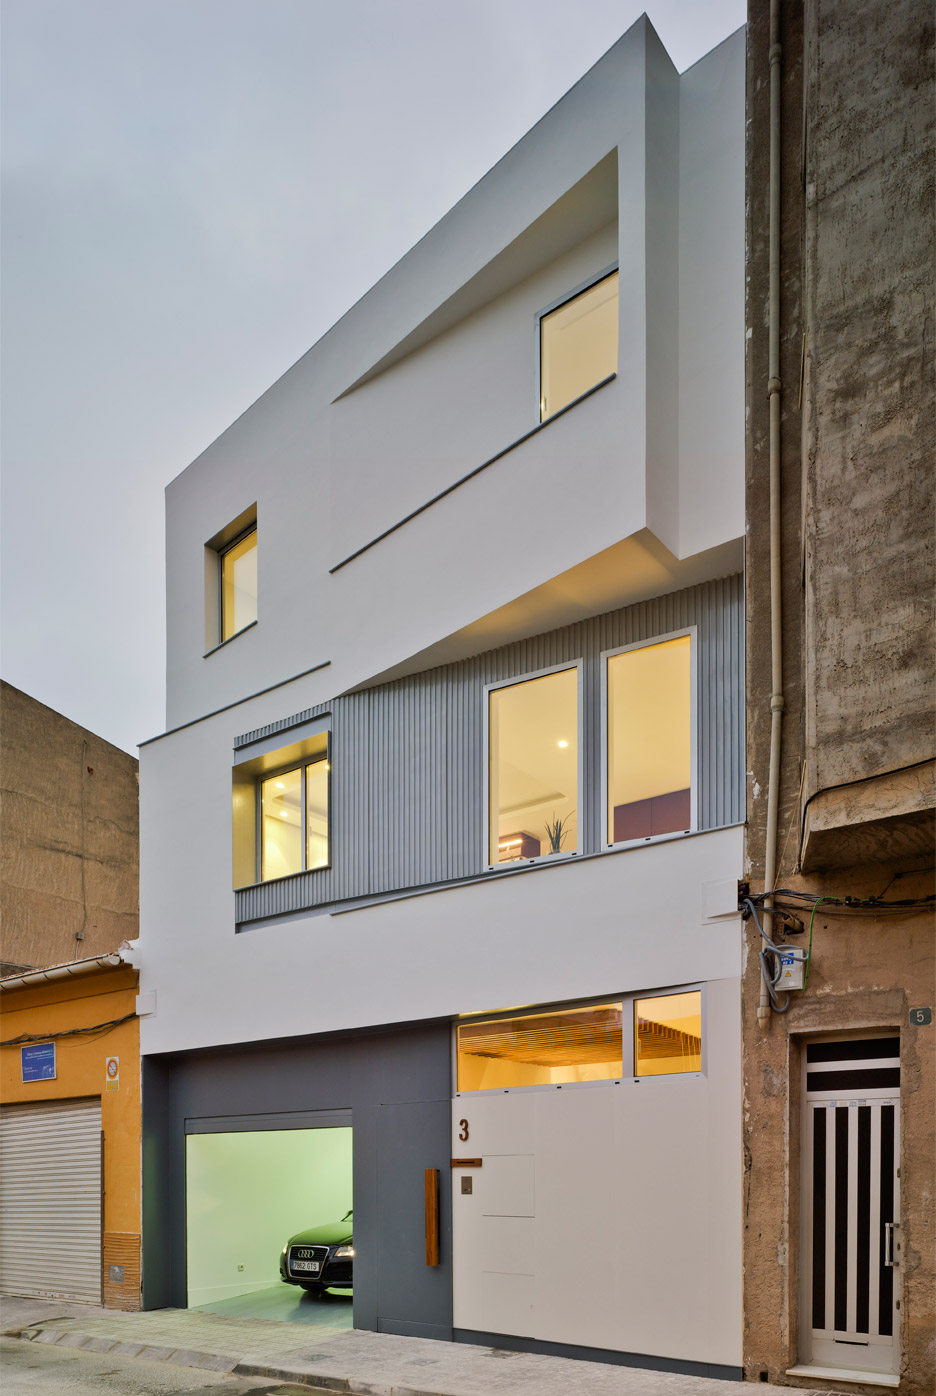 House F&M in Spain is designed by Luis Navarro Jover and Carlos Sánchez García